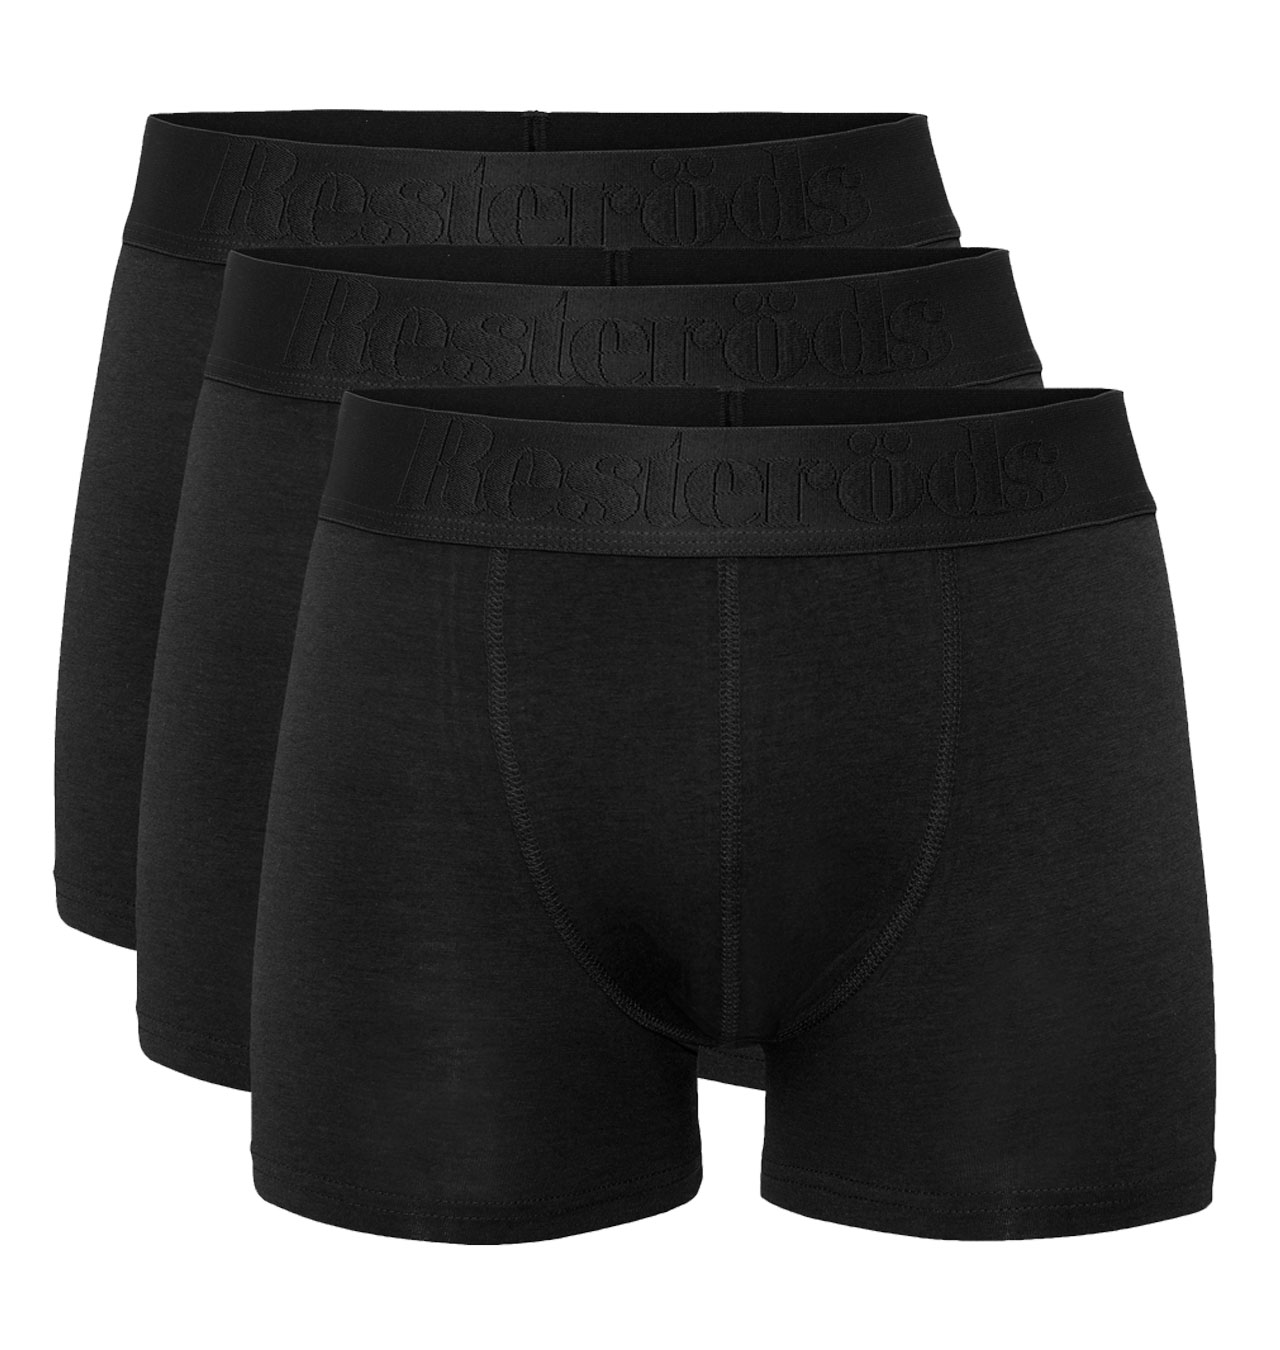 Resteröds - Gunnar Bamboo Boxer Shorts 3-pack - Black